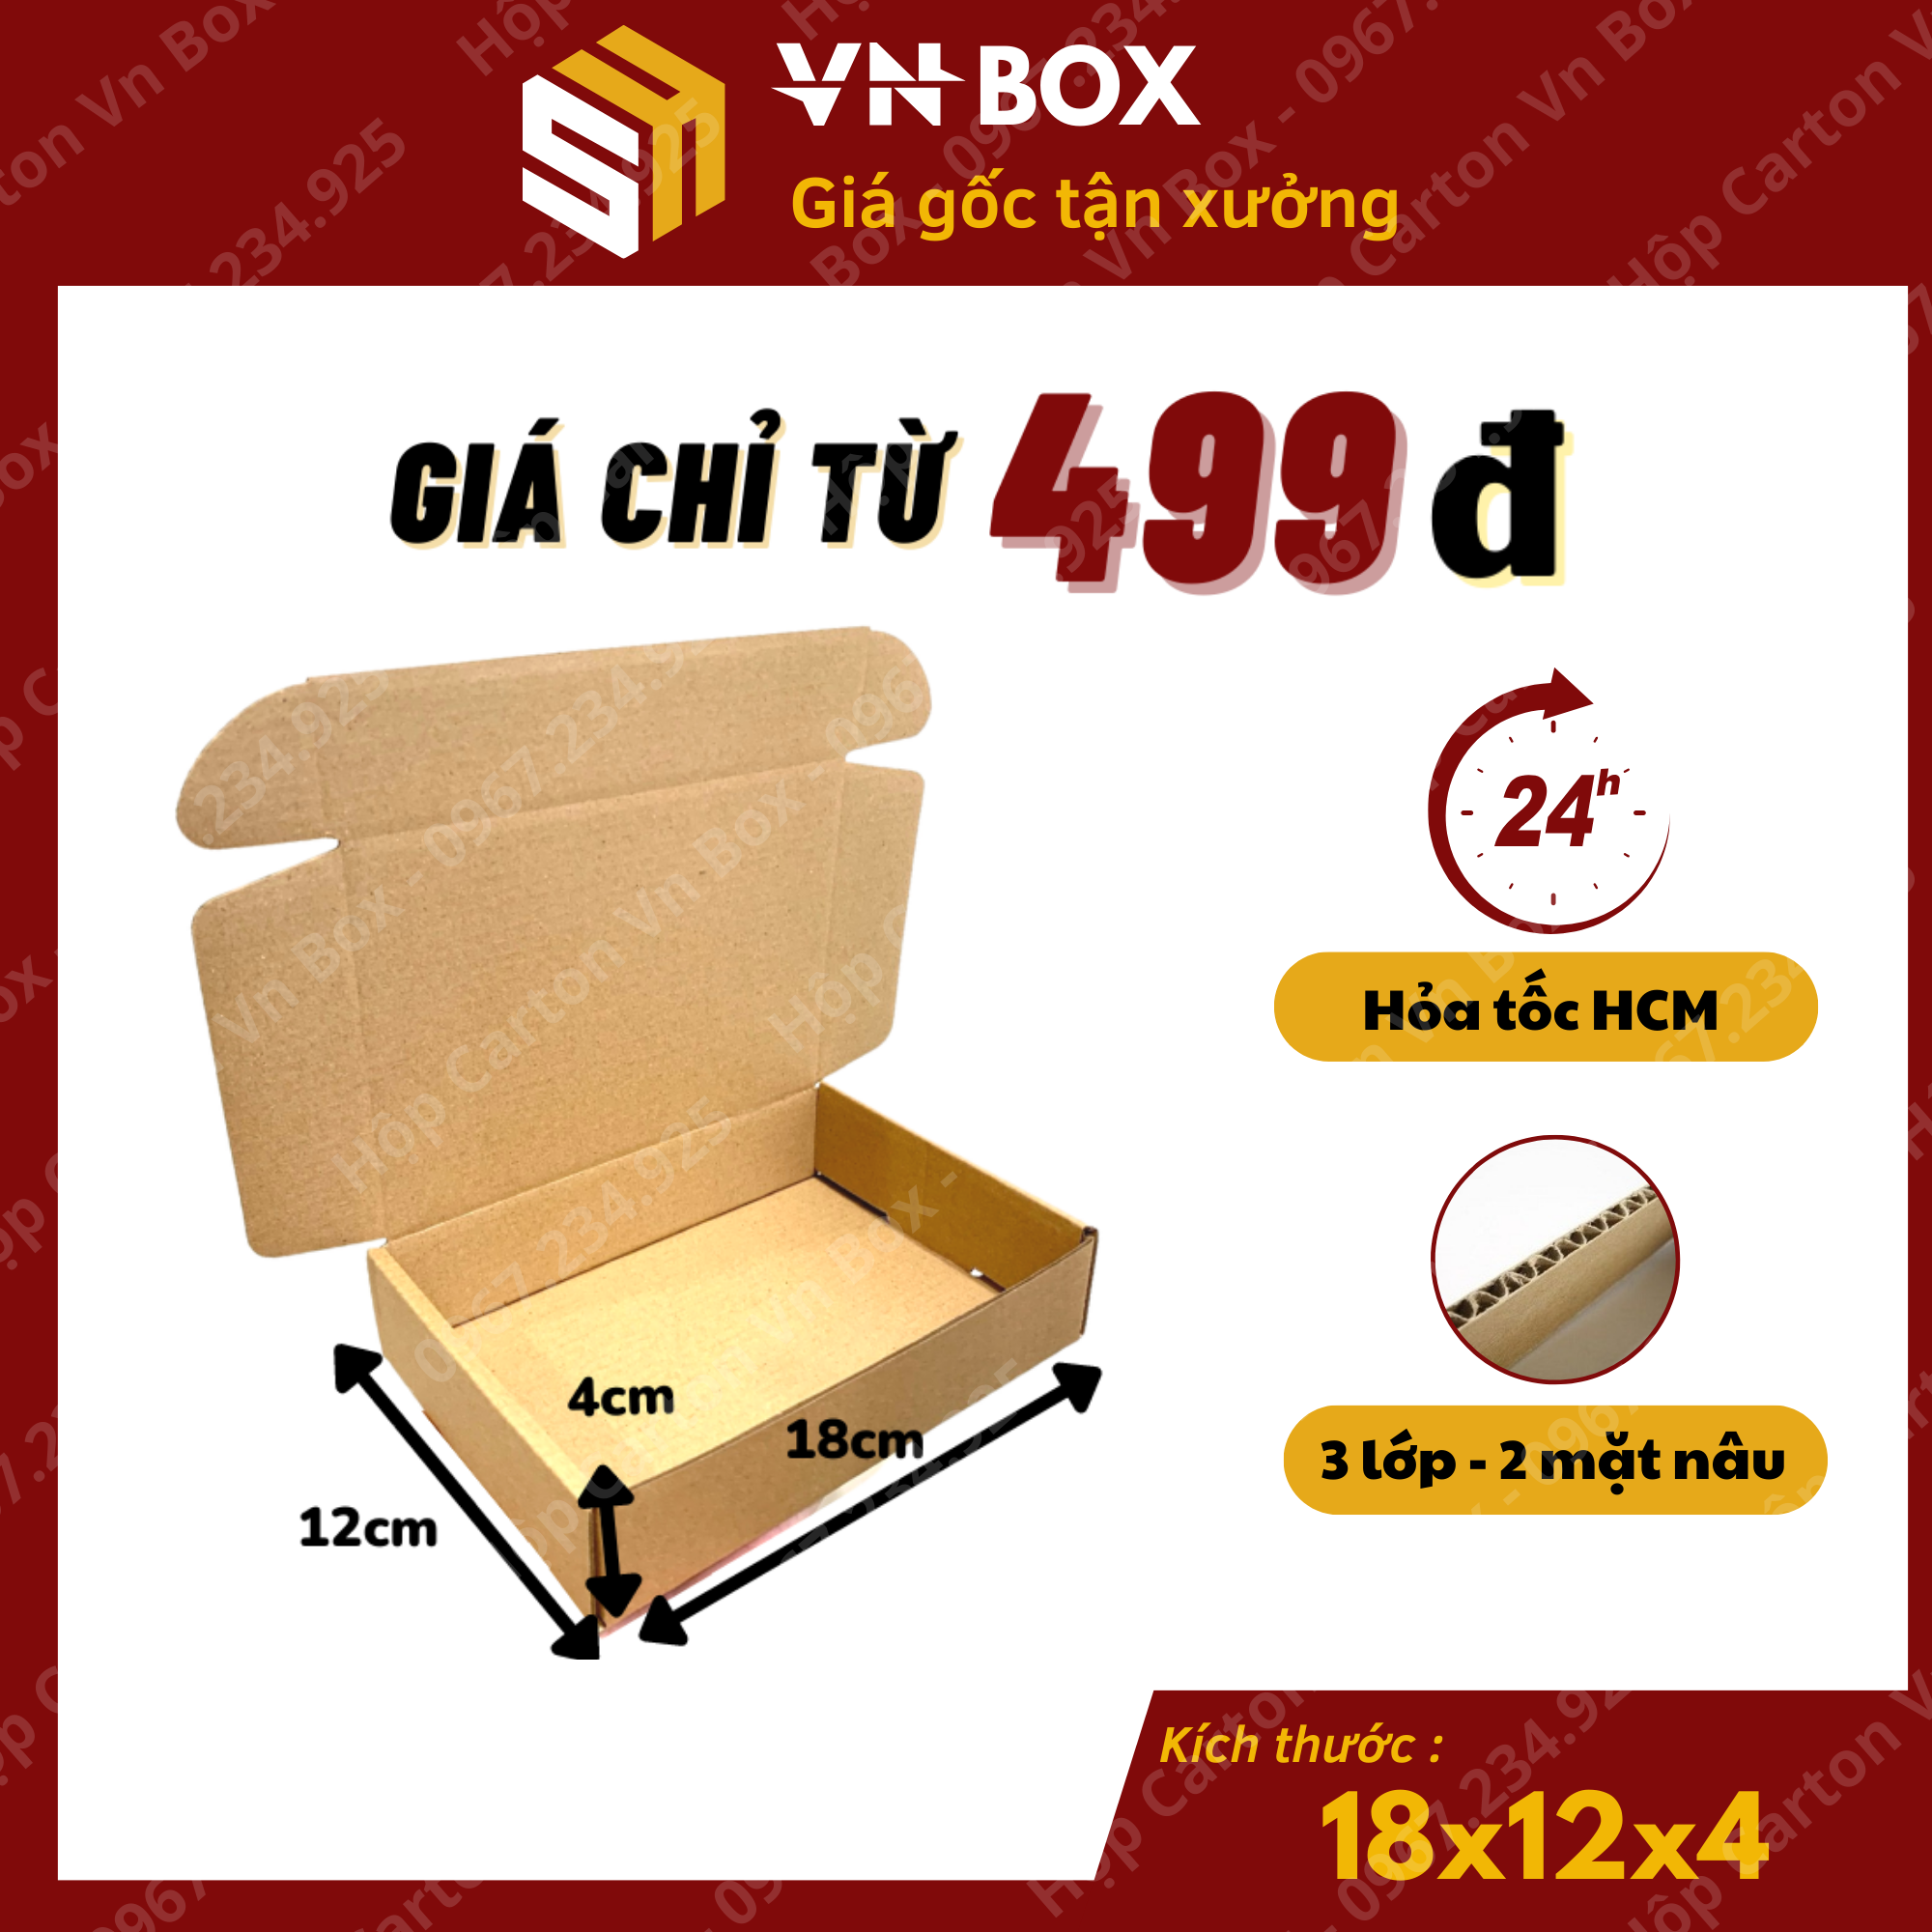 18x12x4 Hộp nắp gài pizza, hộp giấy nắp cài gói hàng phụ kiện, nước hoa chiết quà tặng handmade giá rẻ - VN BOX HCM